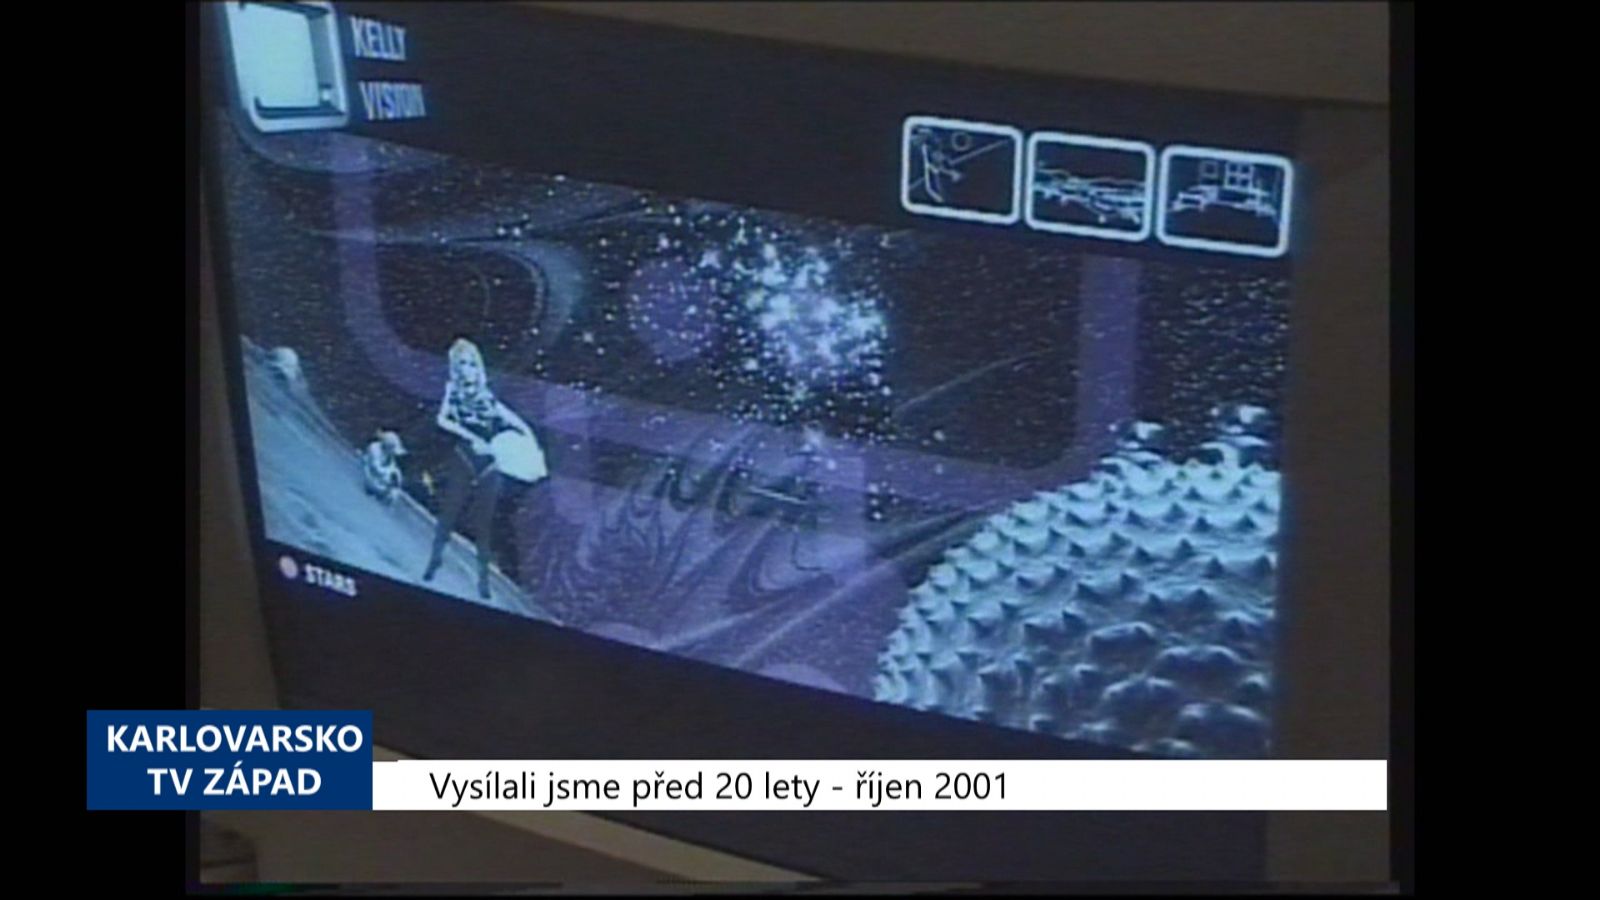 2001 – Cheb: Výstava Nová média měla úspěch (TV Západ)